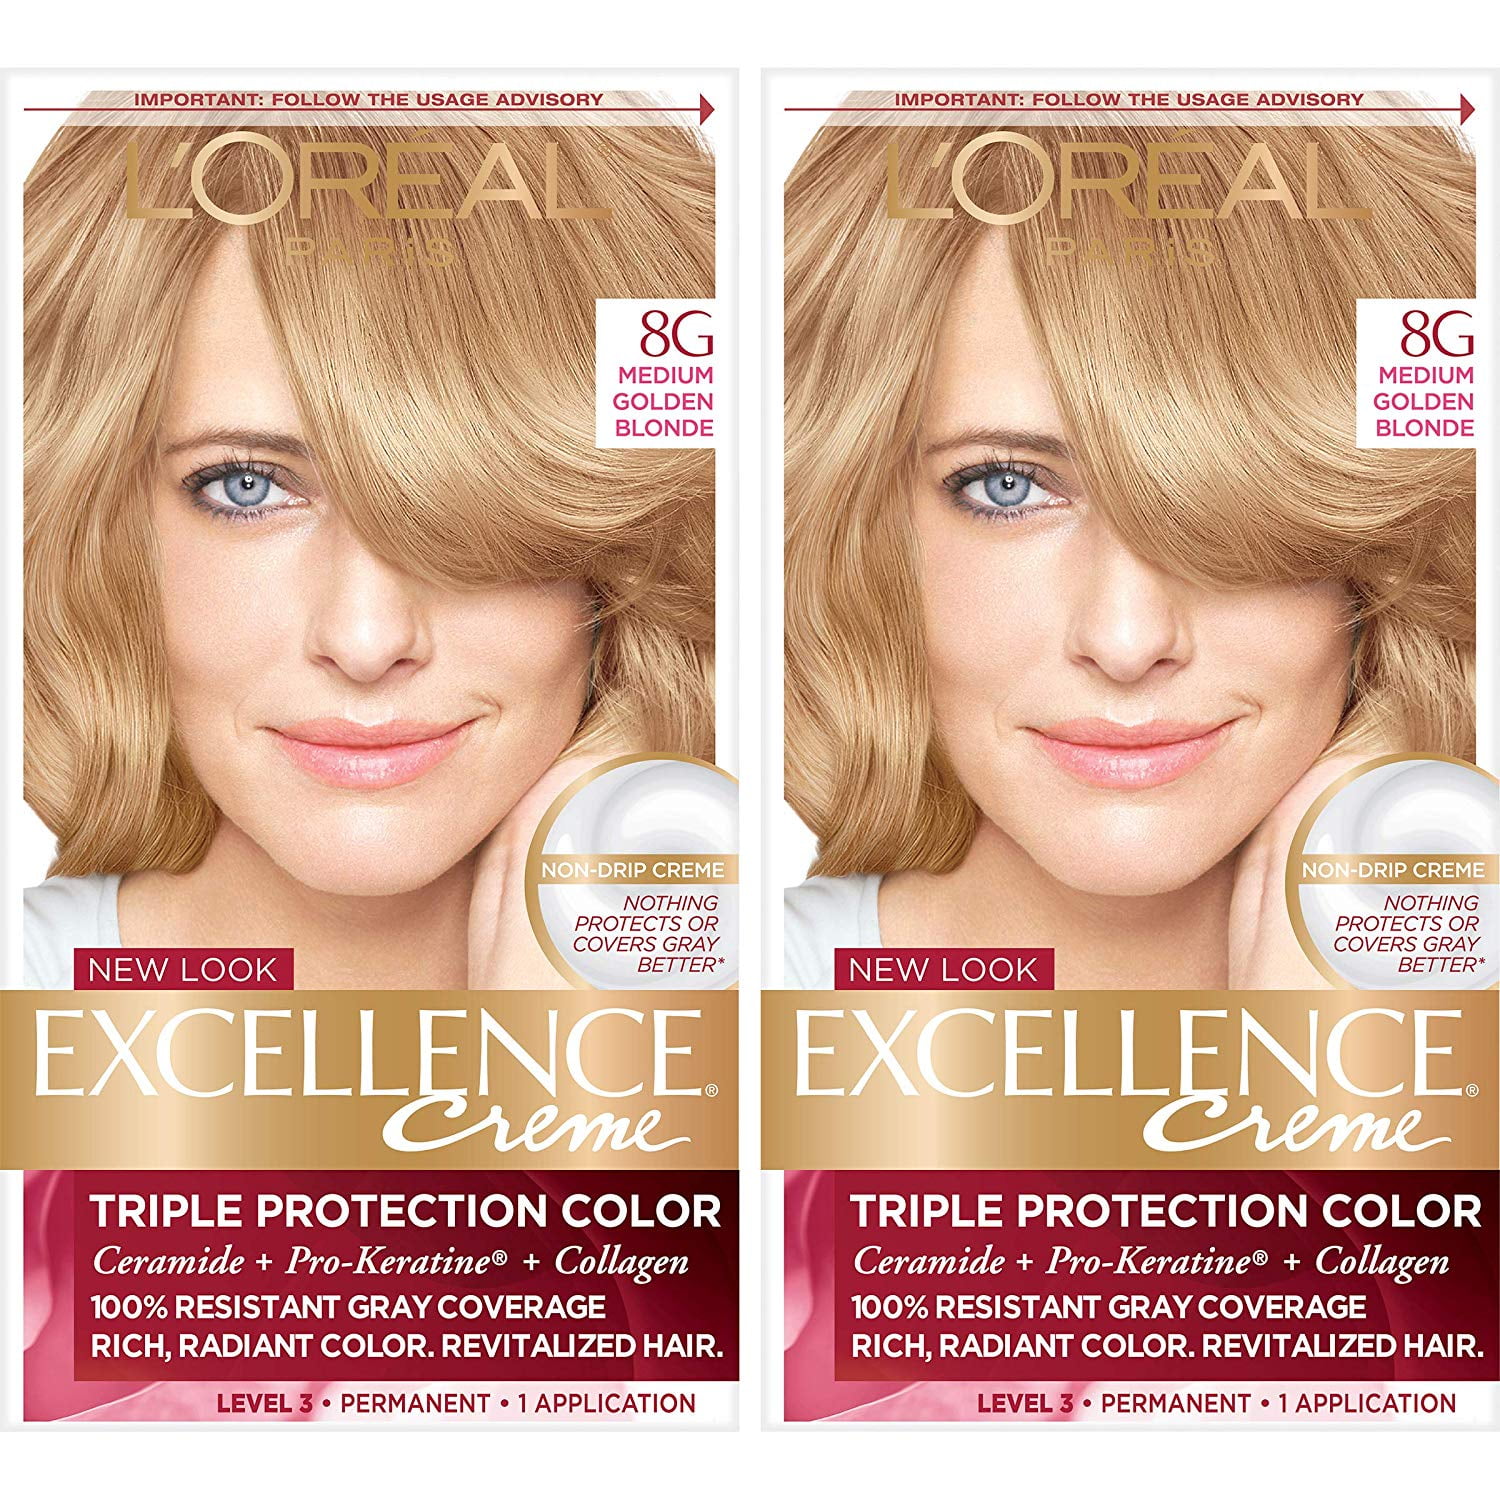 Loréal Paris Excellence Créme Permanent Hair Color 8g Medium Golden Blonde 2 Count 100 Gray